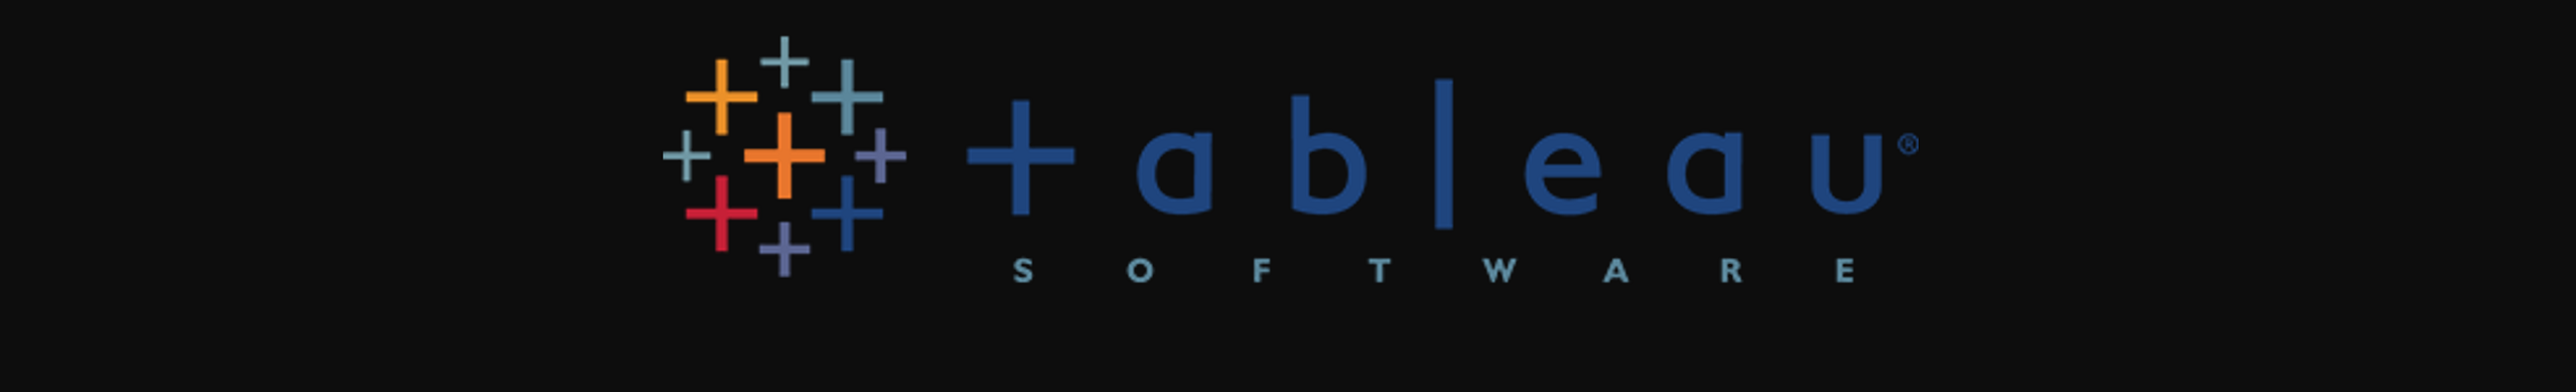 Tableau Logo - Top 10 Data Analytics Tools - Edureka